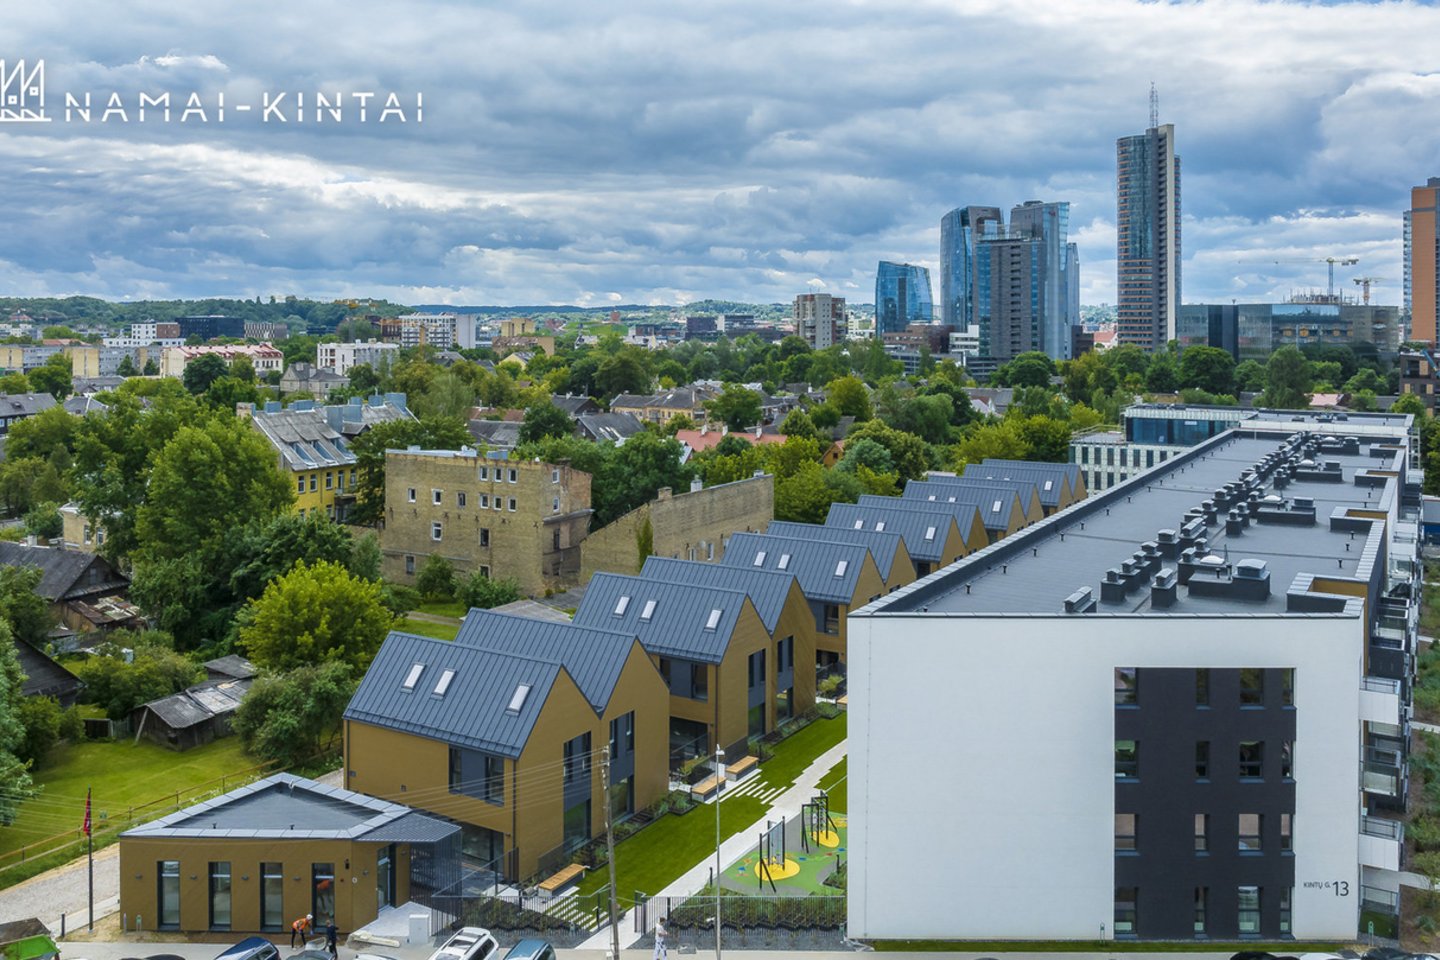 Nekilnojamojo turto plėtros bendrovė „Galio Group“ baigė statyti gyvenamąjį projektą „Namai-Kintai“ Vilniaus Šnipiškių rajone. Investicijos į k eturių aukštų daugiabučio namo ir dvylikos mažaaukščių sublokuotų namų kompleksą siekė 14,5 mln. eurų su PVM.<br>Projekto „Namai-Kintai“ nuotr.